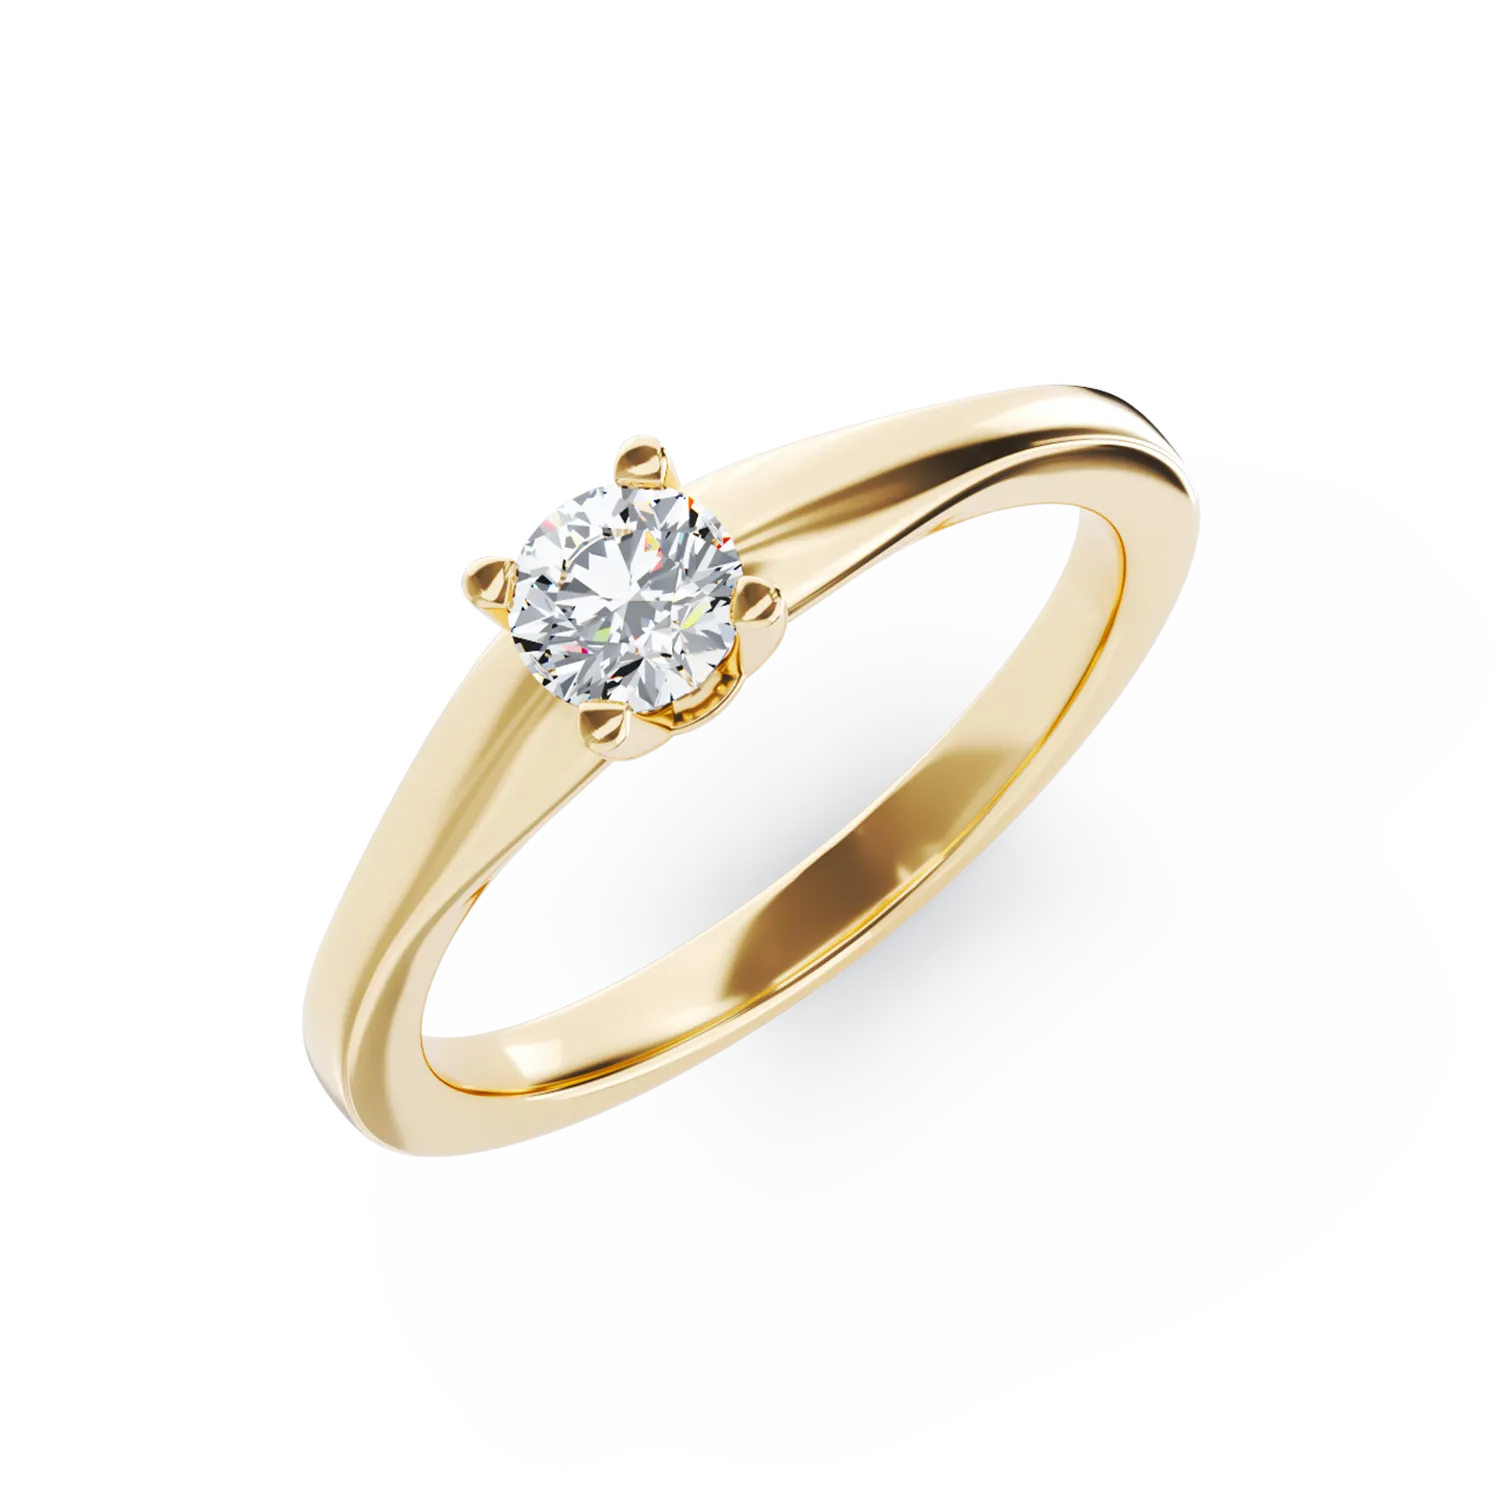 Eljegyzési gyűrű 18K-os sárga aranyból 0,305ct gyémánttal. Gramm: 2,65